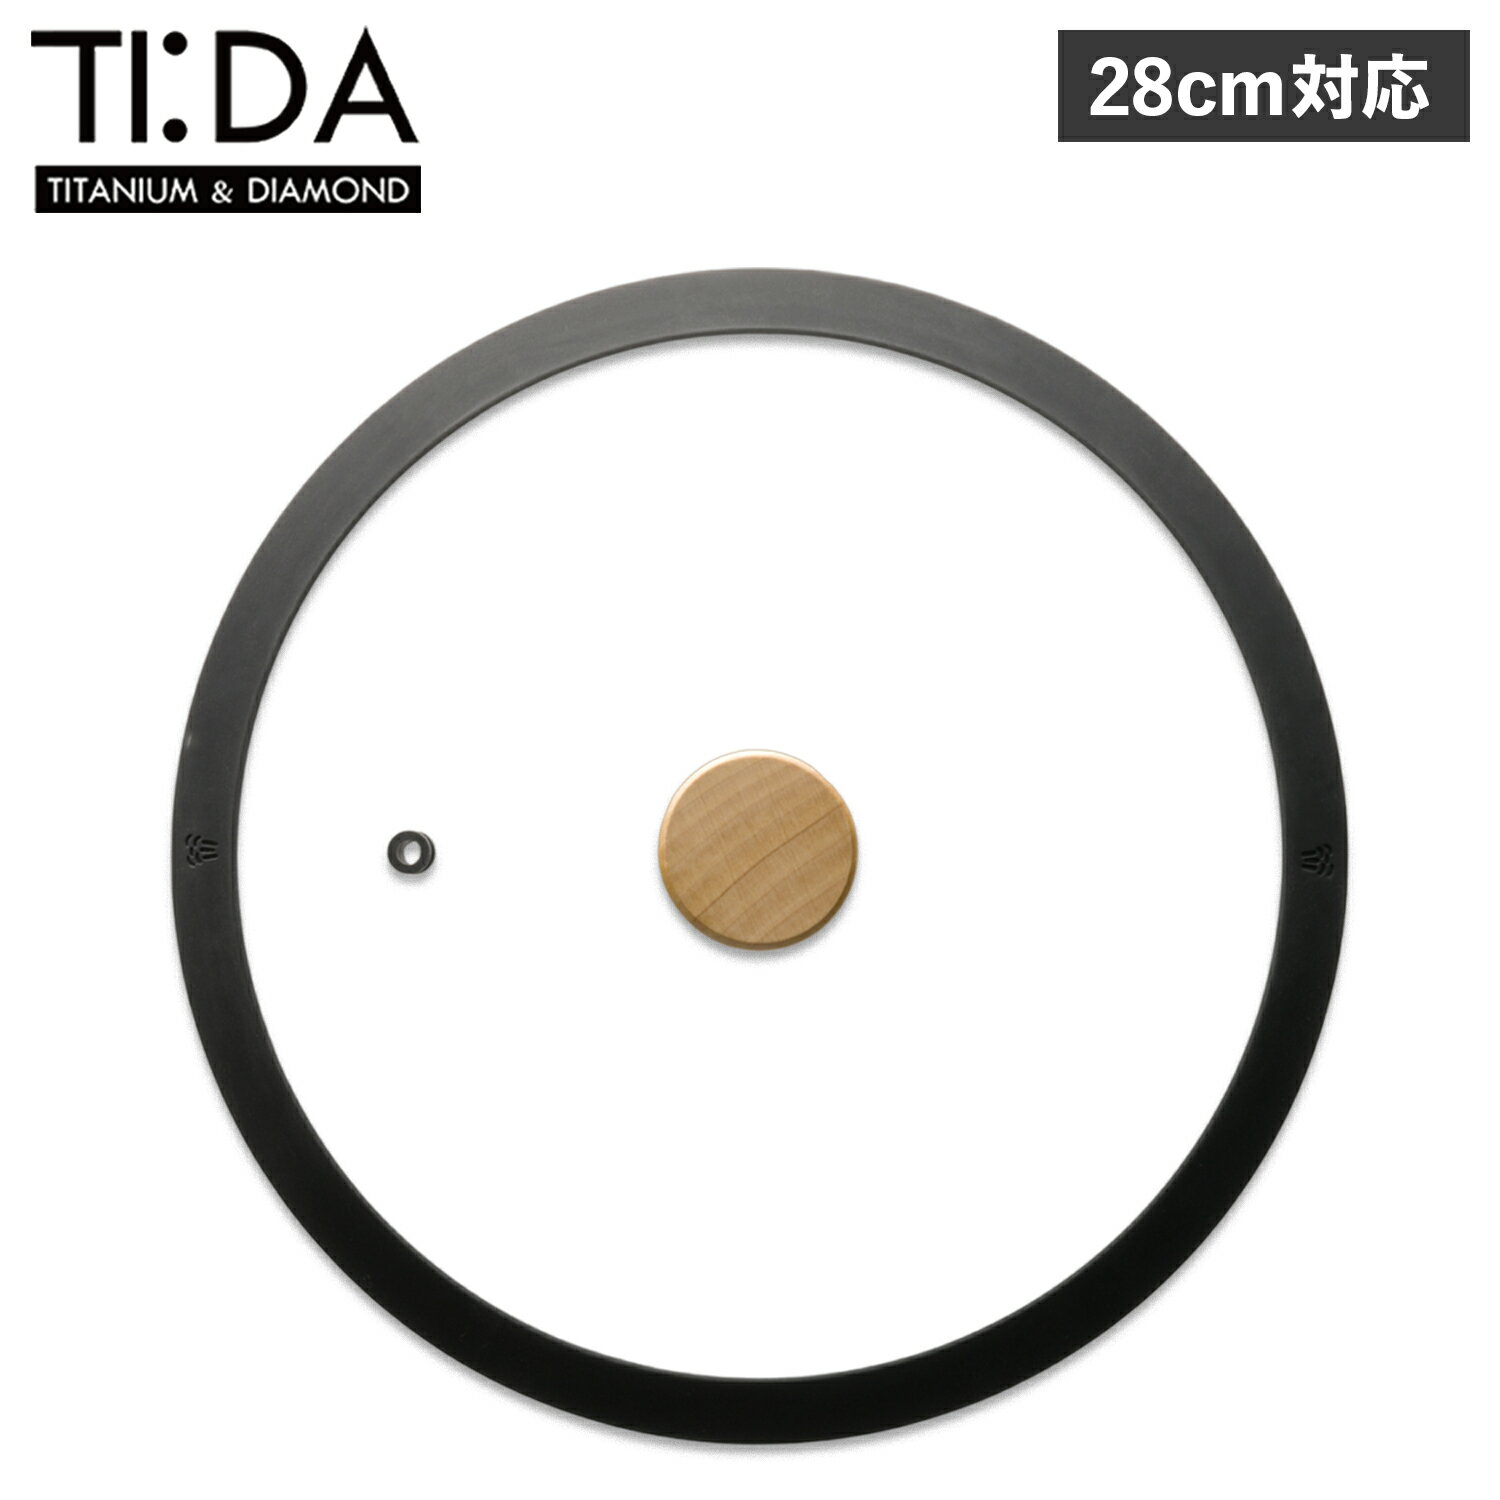 ティーダ TI:DA フライパン マルチパン 蓋 ガラス蓋 28cm 対応 GLASS LID KKN-TG28